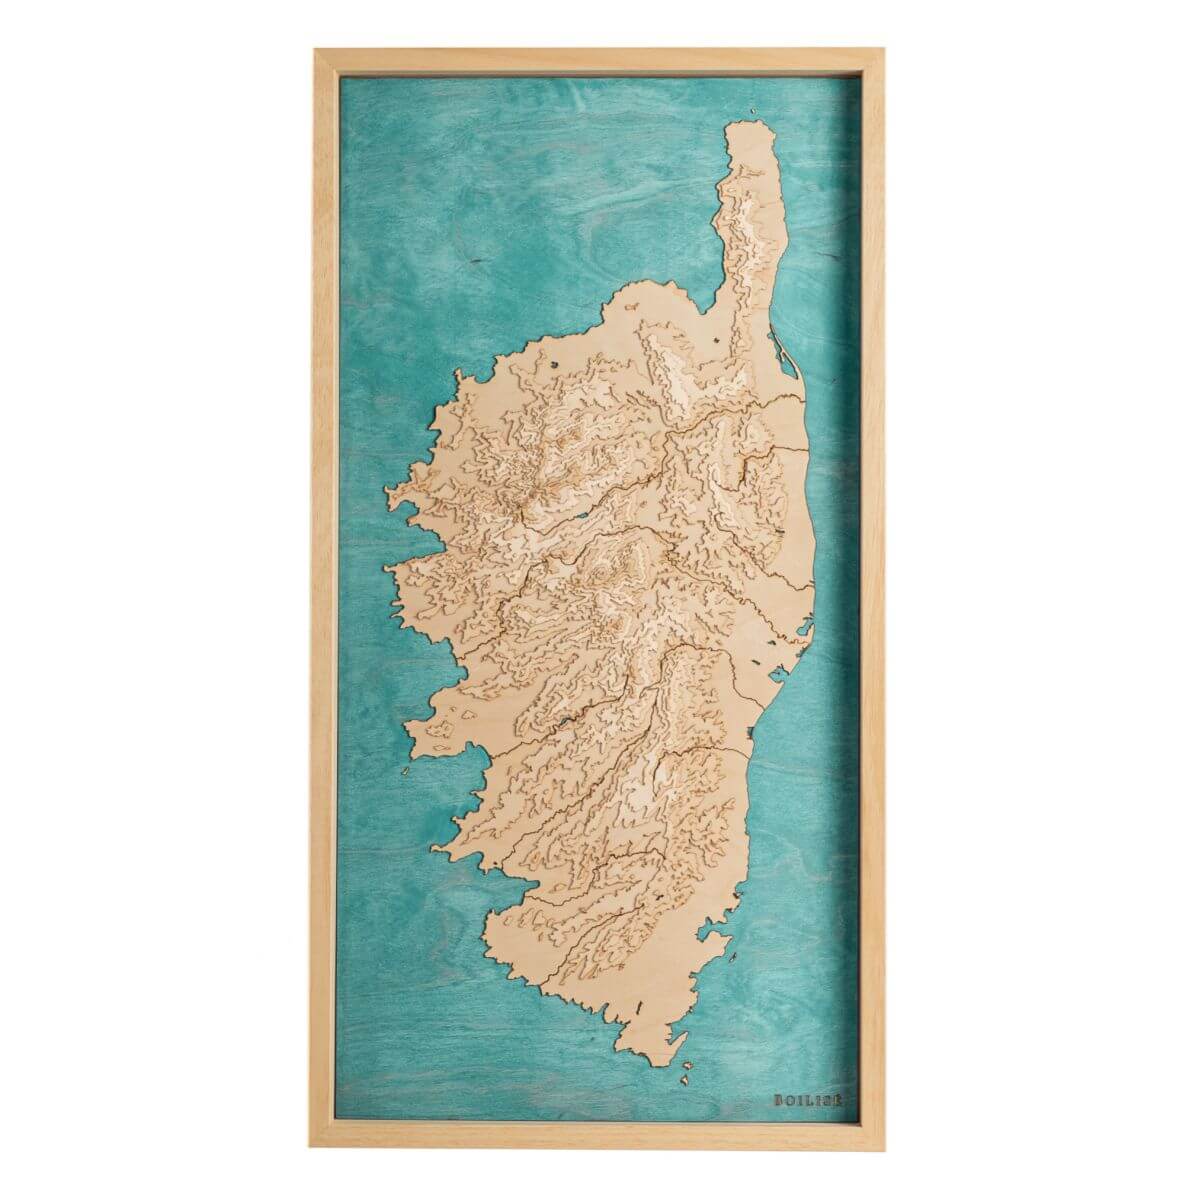 La carte de la Corse avec les eaux de la Méditerranée en turquoise